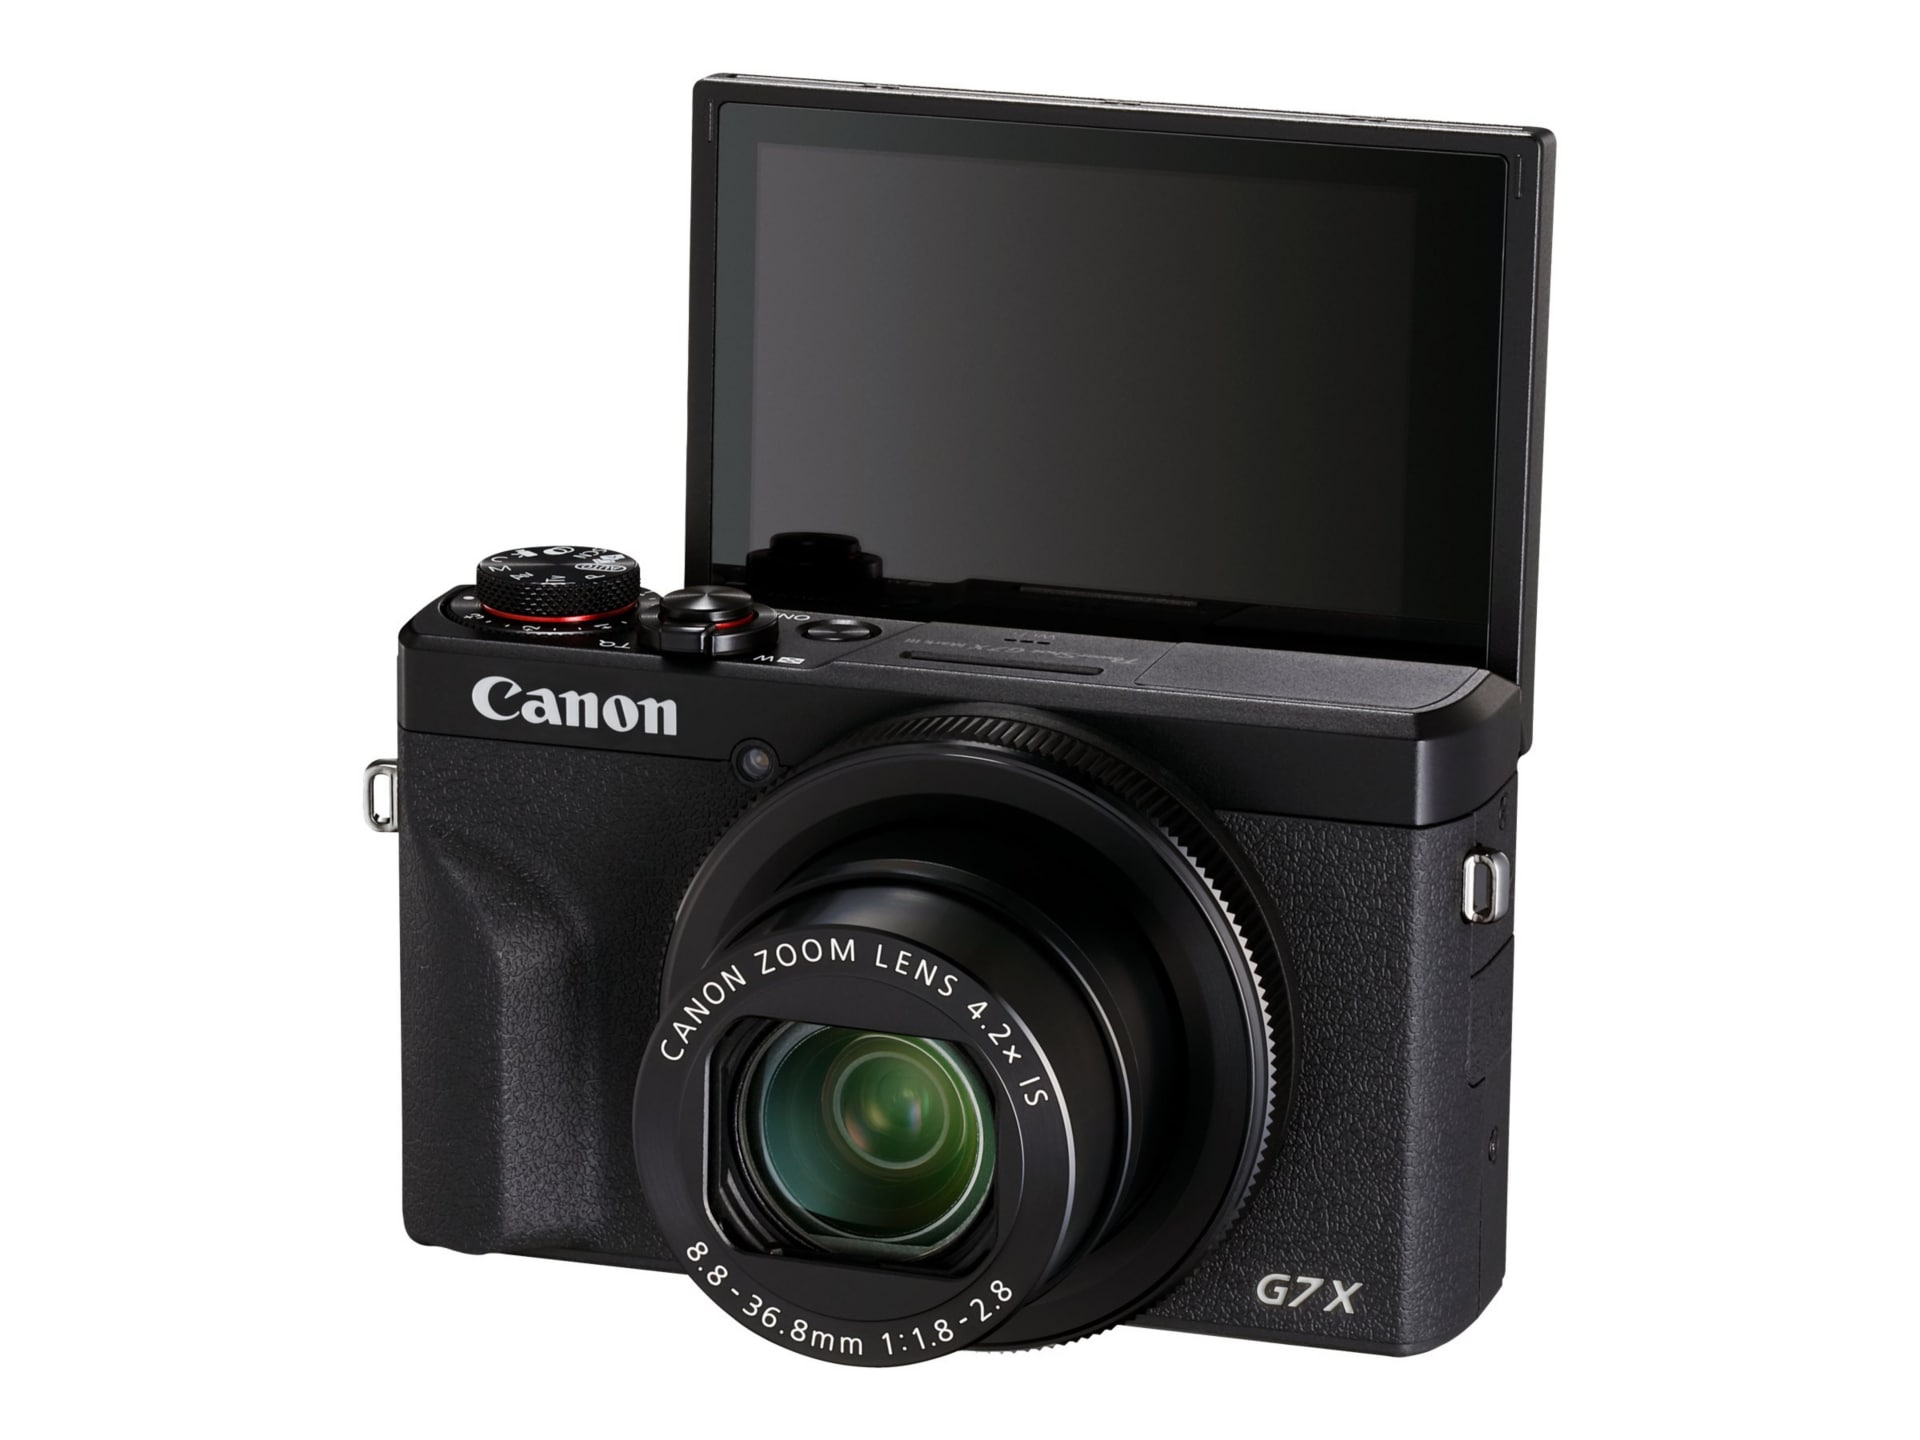 Canon PowerShot G7 X Mark III: Características y Precio